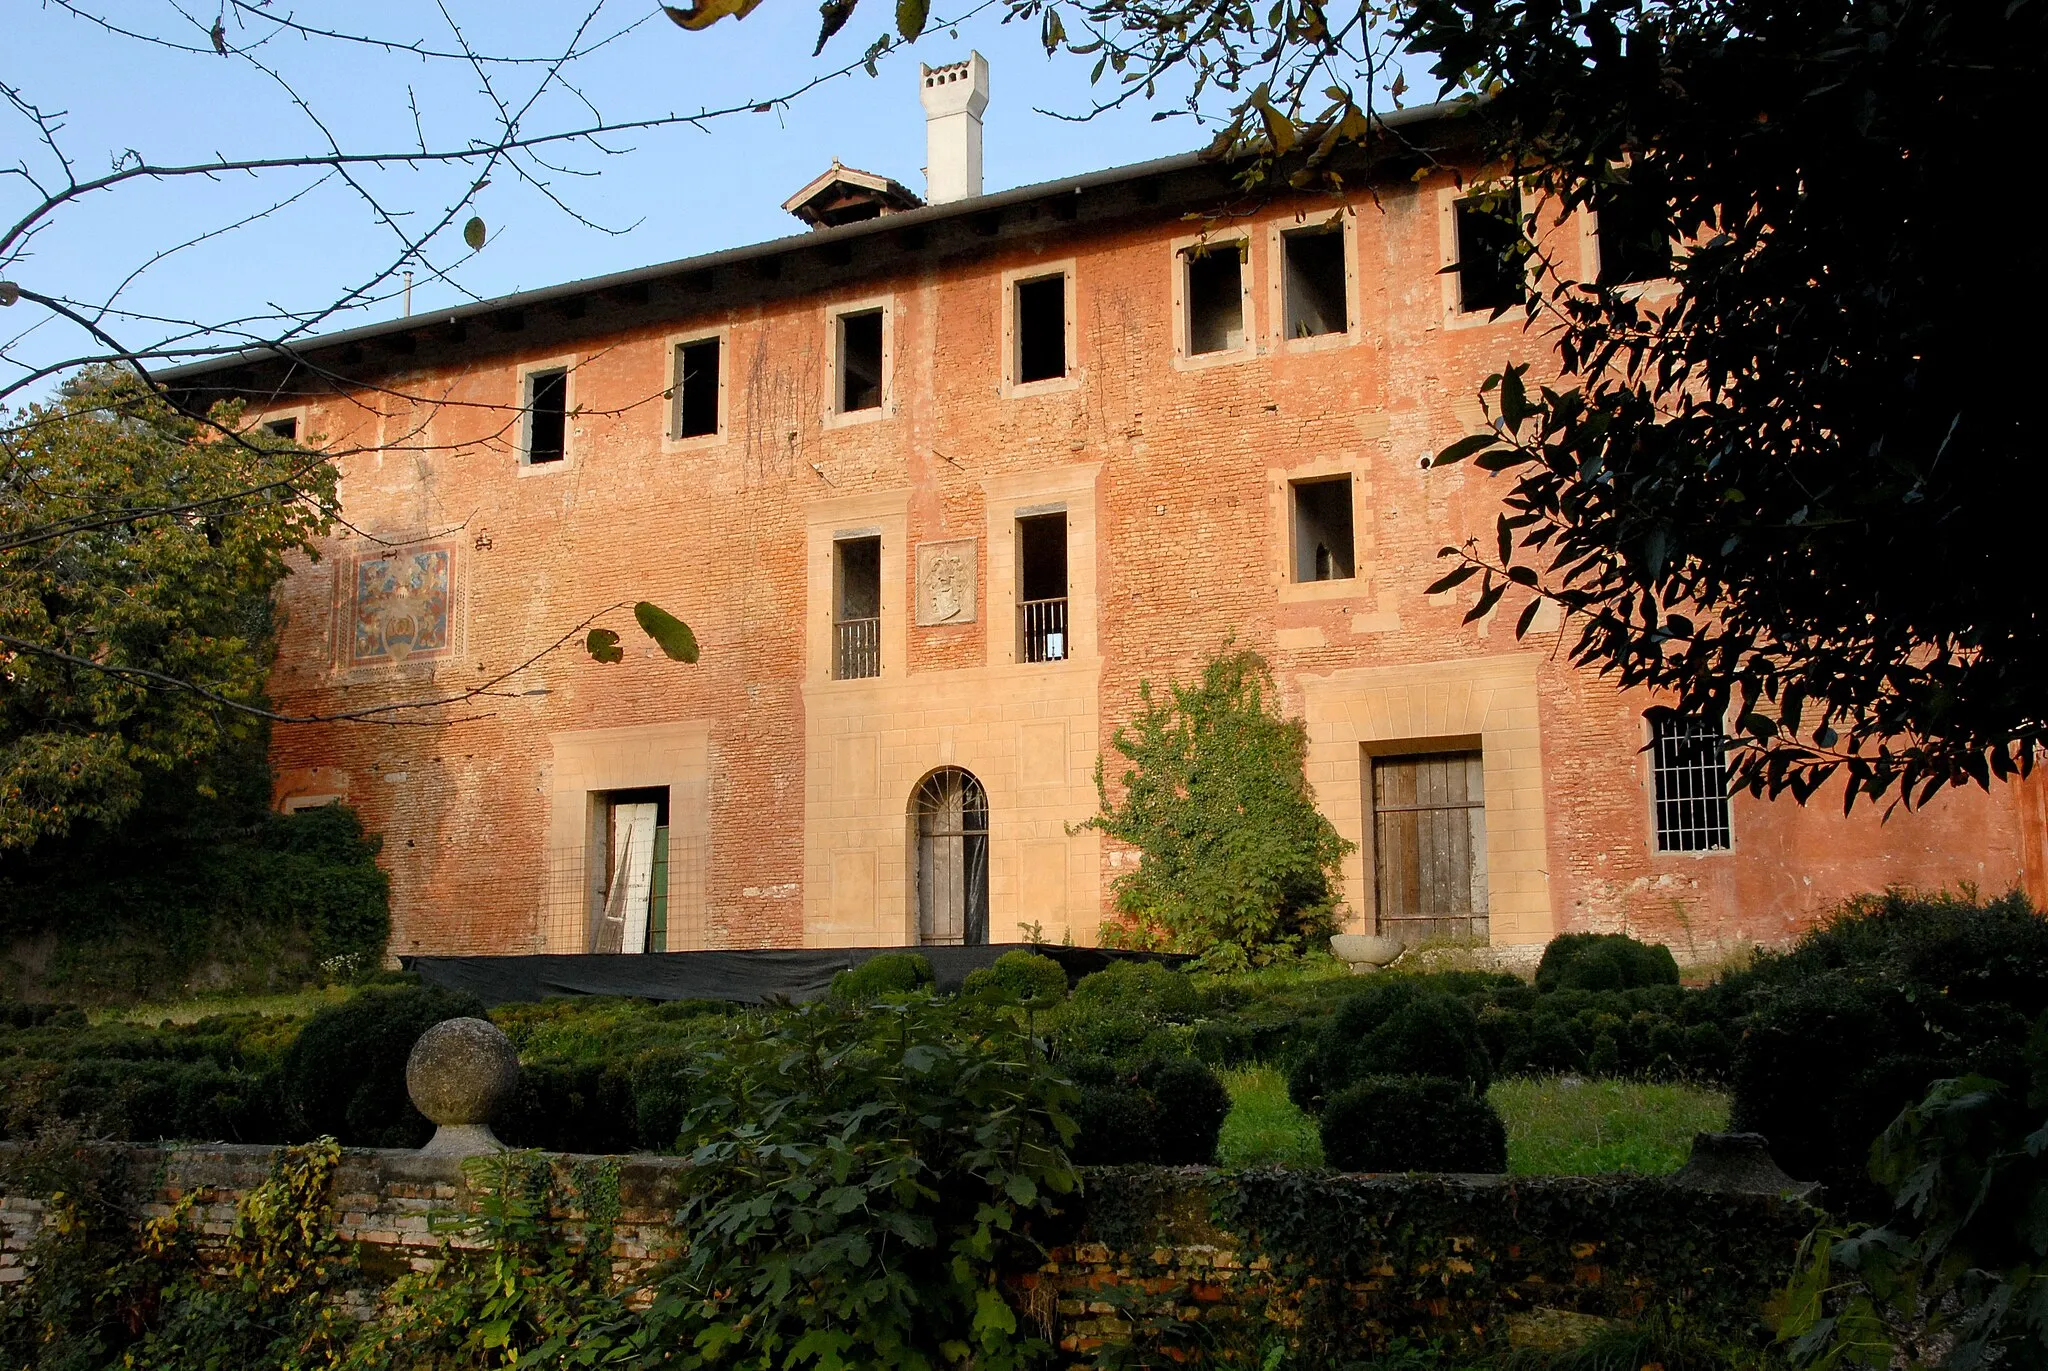 Photo showing: Villa Savorgnan-Ottelio at Ariis in the commune of Rivignano Teor, province of Udine, Friuli Venezia Giulia region, Italy